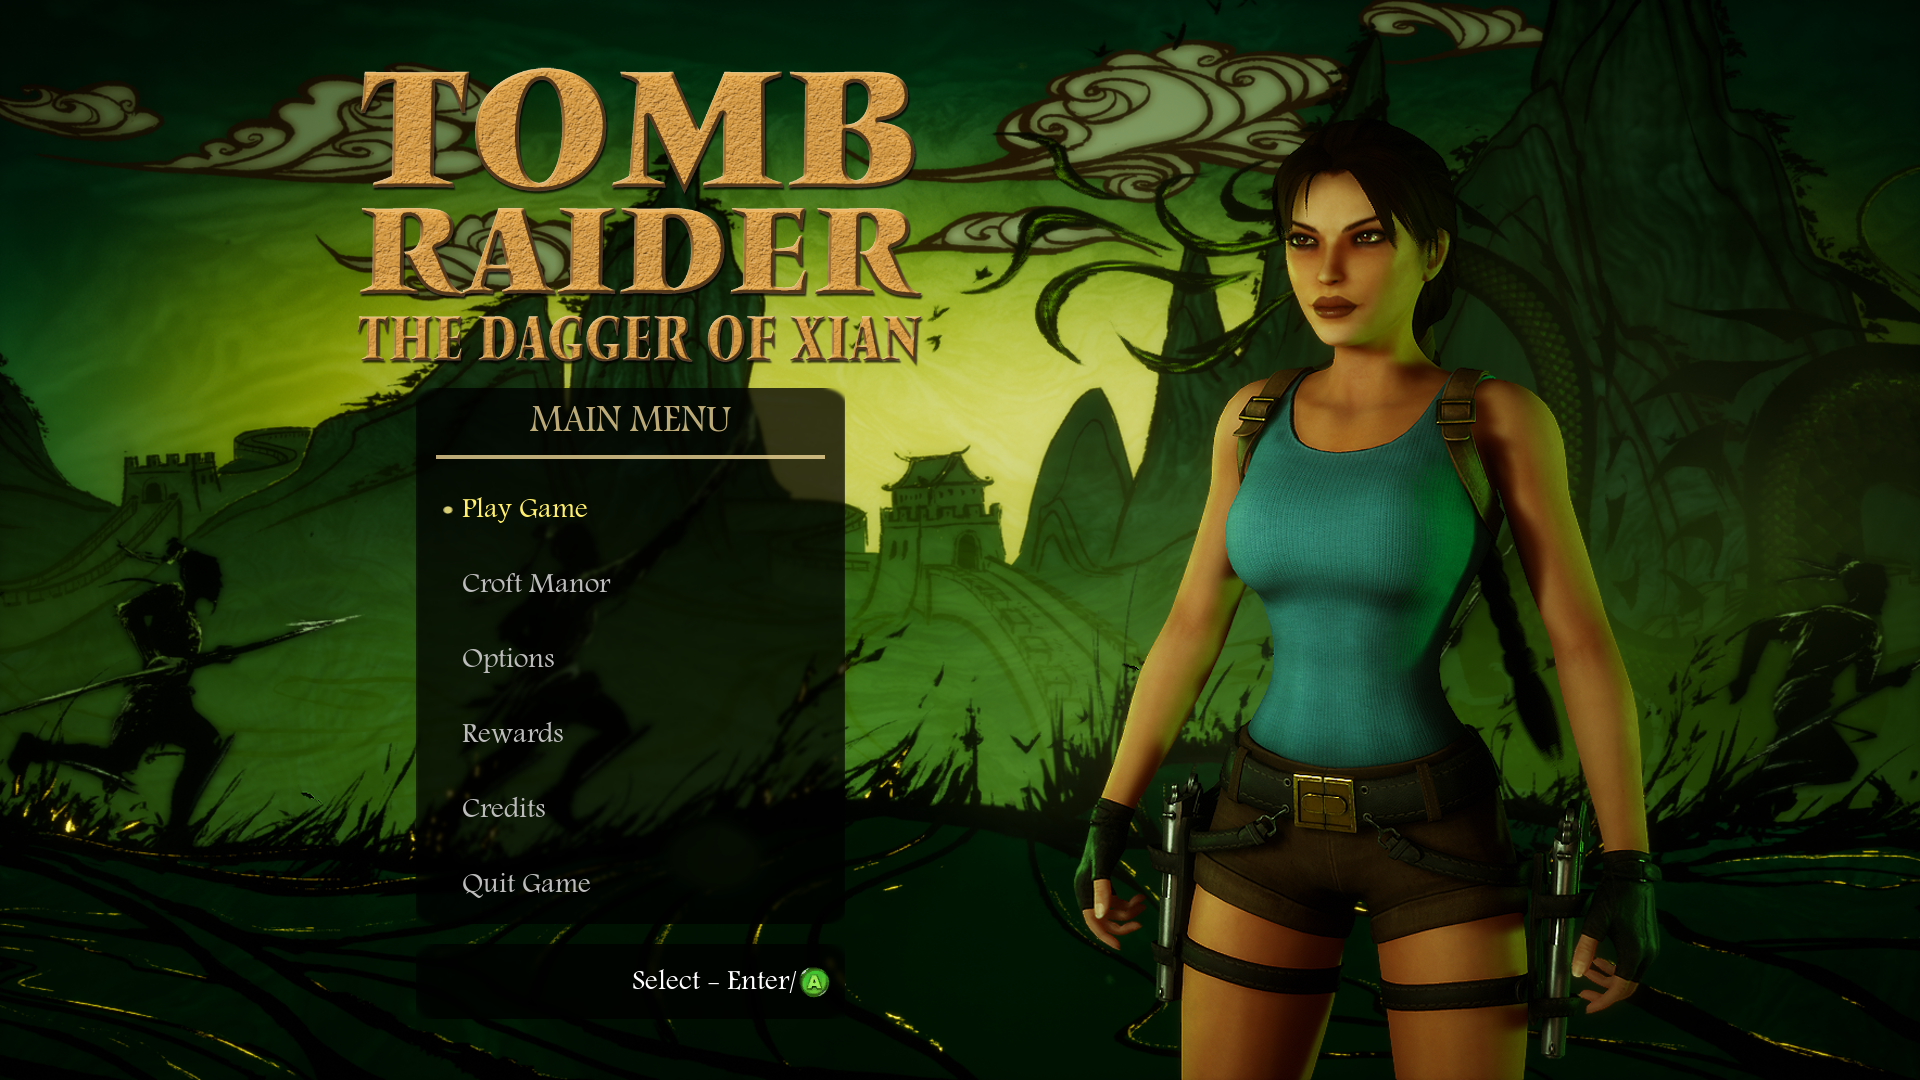 Immagine pubblicata in relazione al seguente contenuto: Disponibile la demo del remake di Tomb Raider II realizzato con Unreal Engine 4 | Nome immagine: news26967_Tomb-Raider-The-Dagger-Of-Xian-Screenshot_3.png